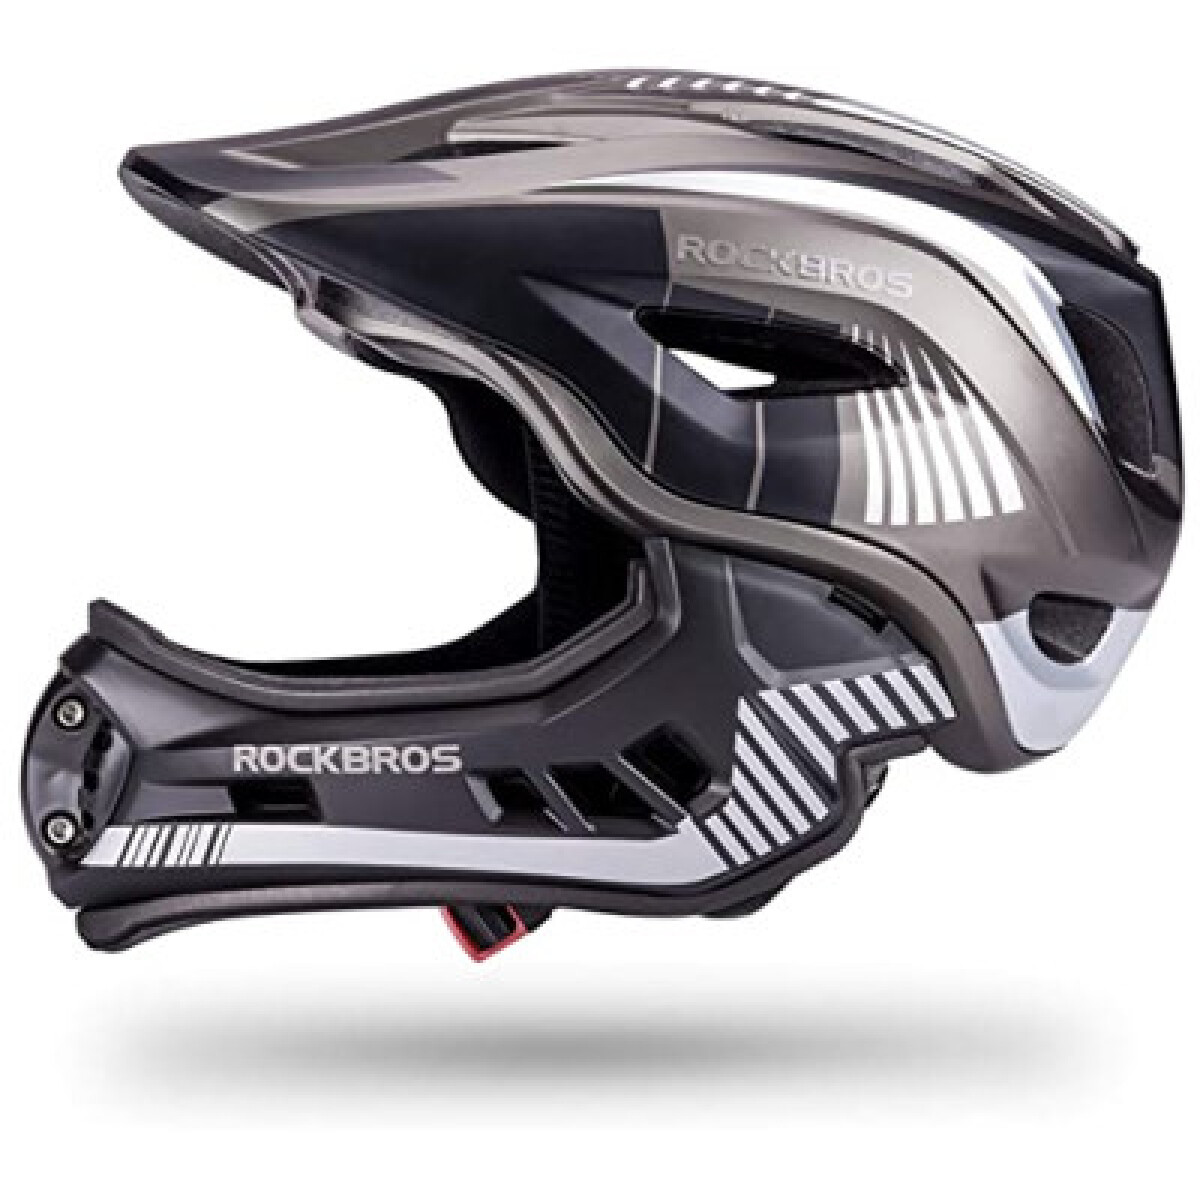 Rockbros - Casco para Bicicleta 2 en 1 TT32 - Diseño Extraible. Material Resistente a Impactos. Tall - 001 